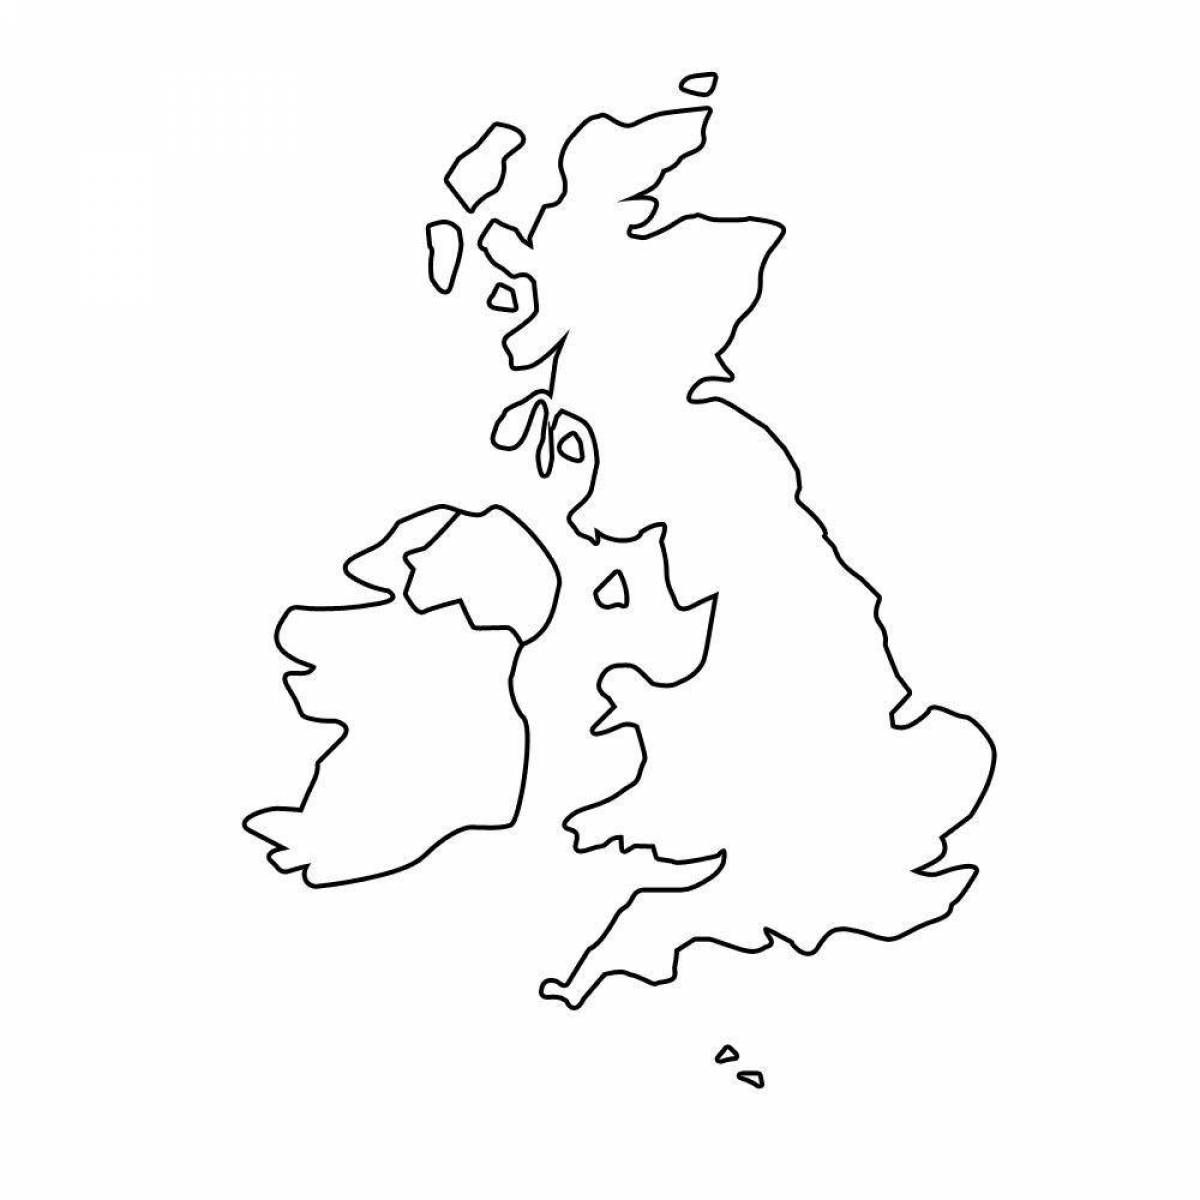 Великобритания на контурной карте. Контурная карта Великобритании. Очертания Великобритании на карте. Контур острова Великобритания. Great Britain Map контурная карта.